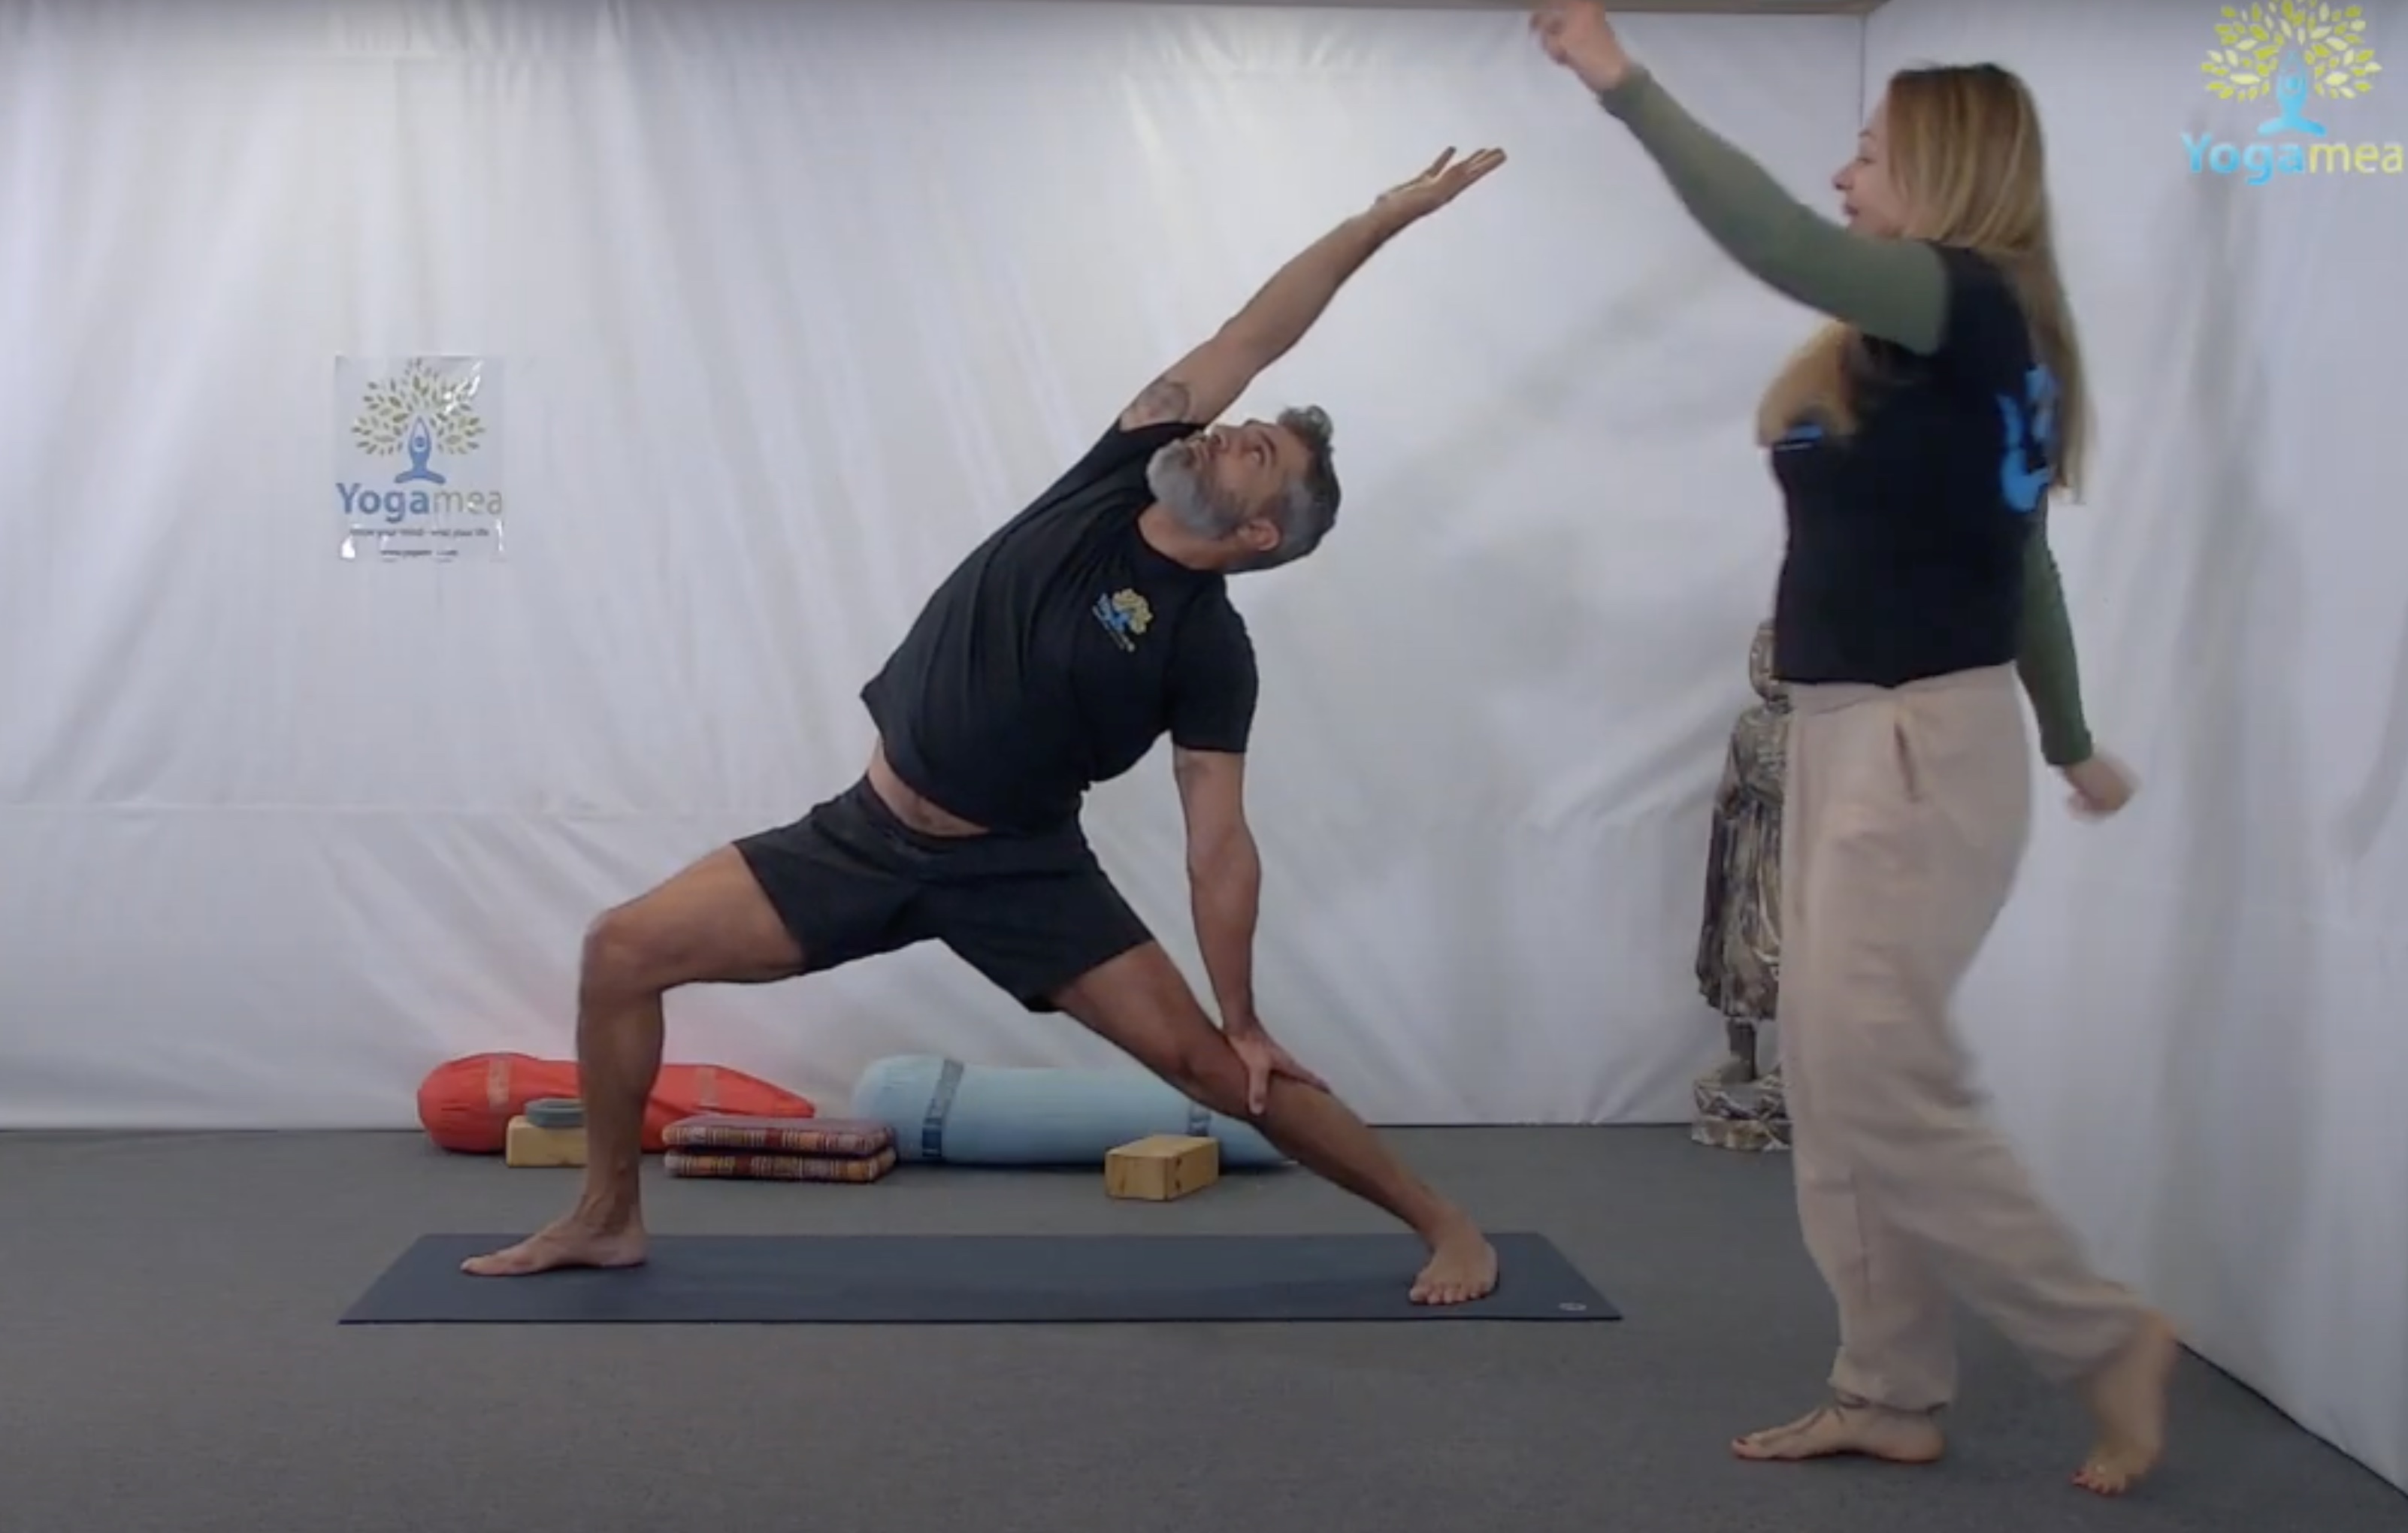 About 200 Hour Yoga Teacher Training